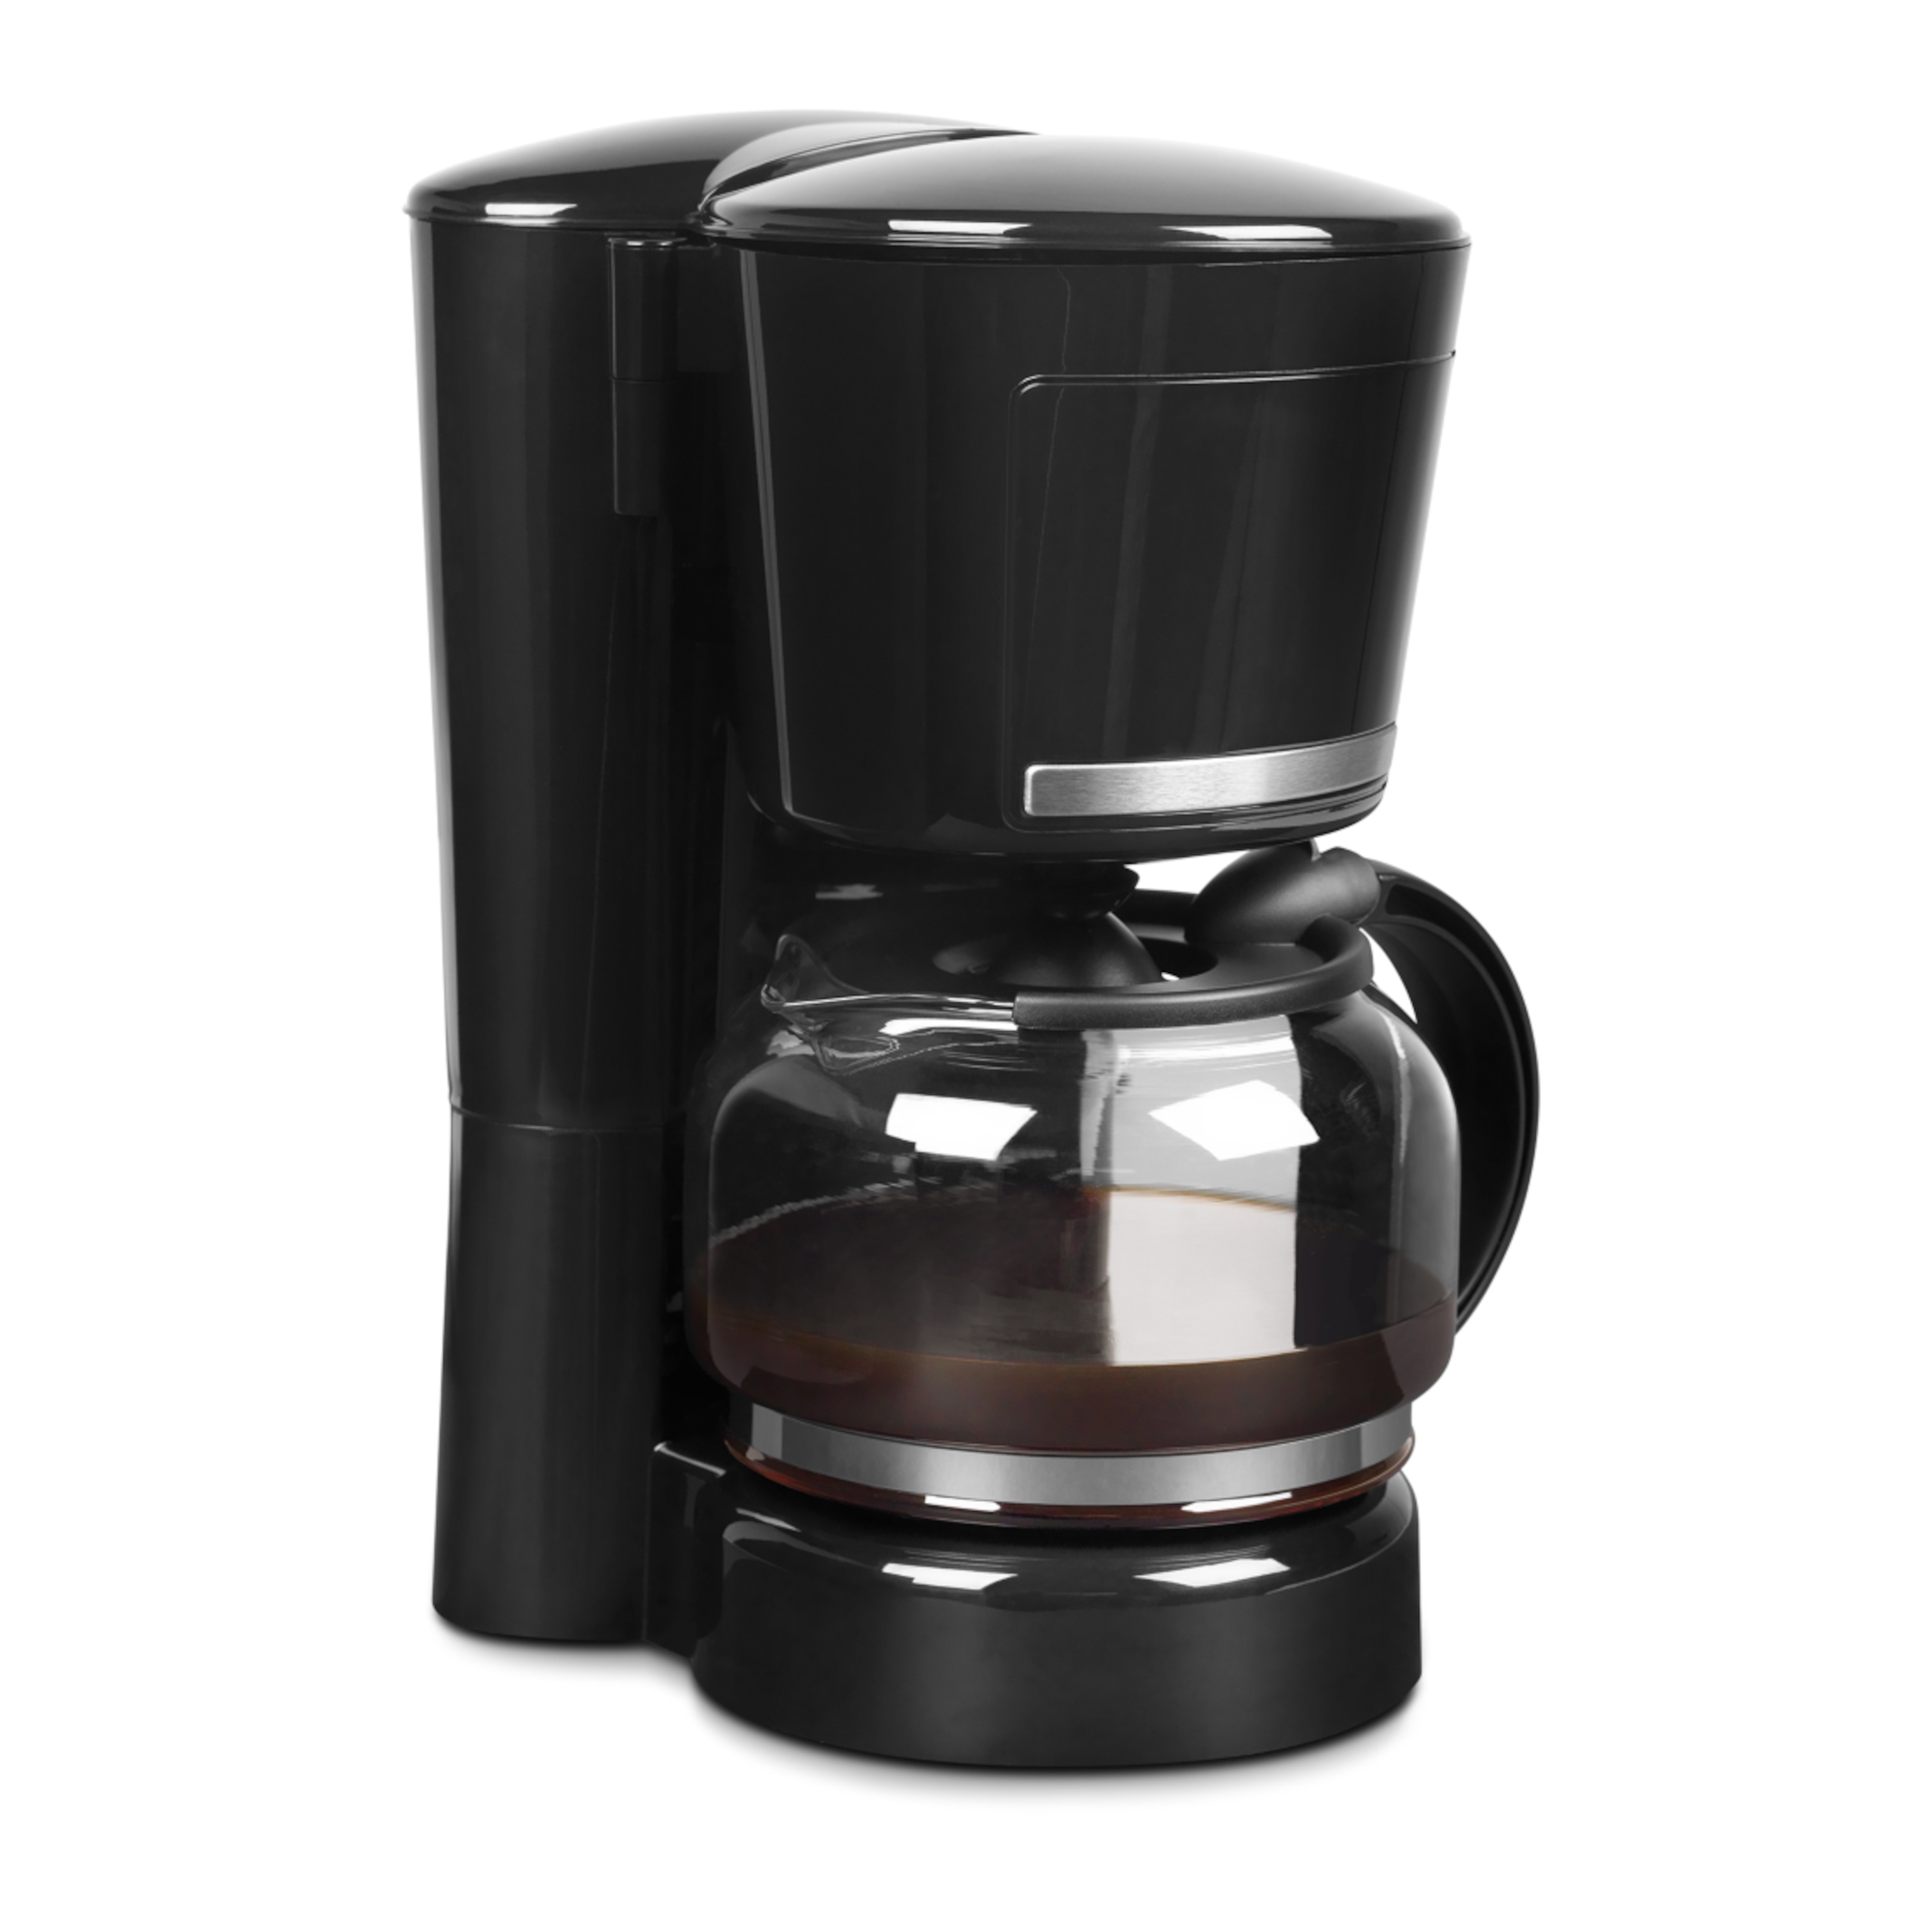 MEDION® Kaffeemaschine MD 17229, 870 Watt Leistung, für 8 bis 10 Tassen, Warmhaltefunktion, Anti-Tropf-Funktion